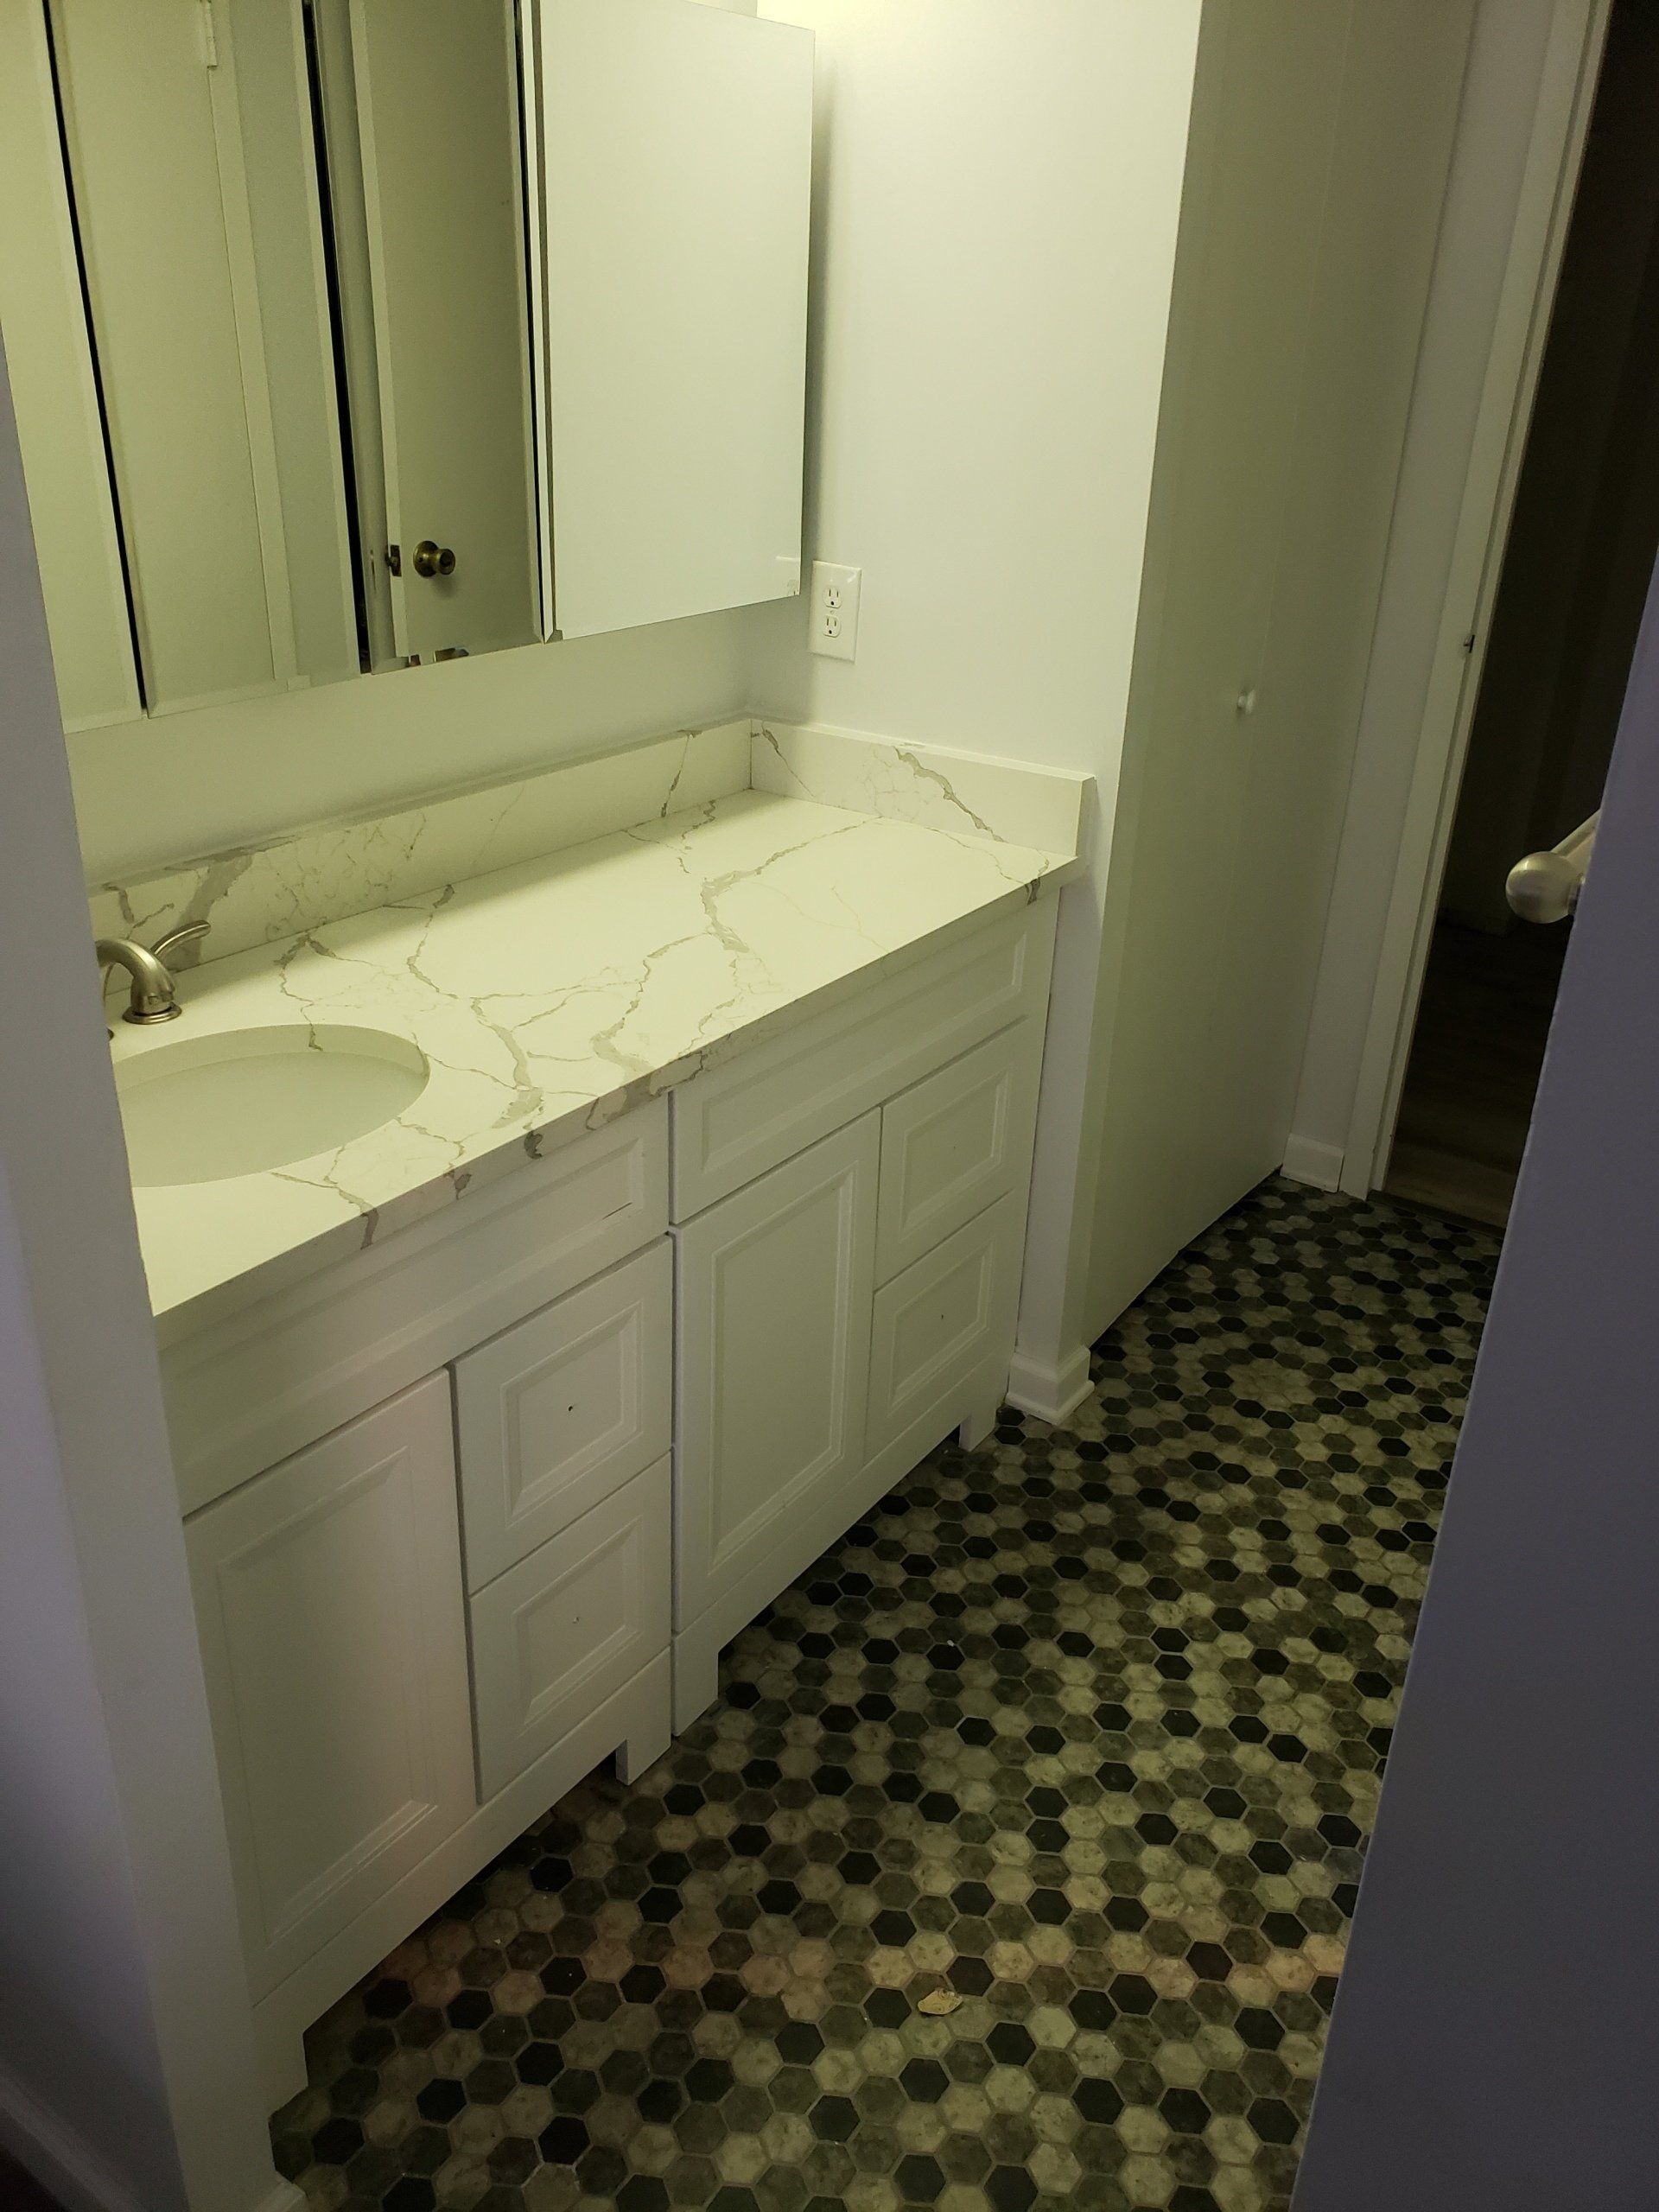 Jenkintown condo bathroom remodel vanity and floor tiles.